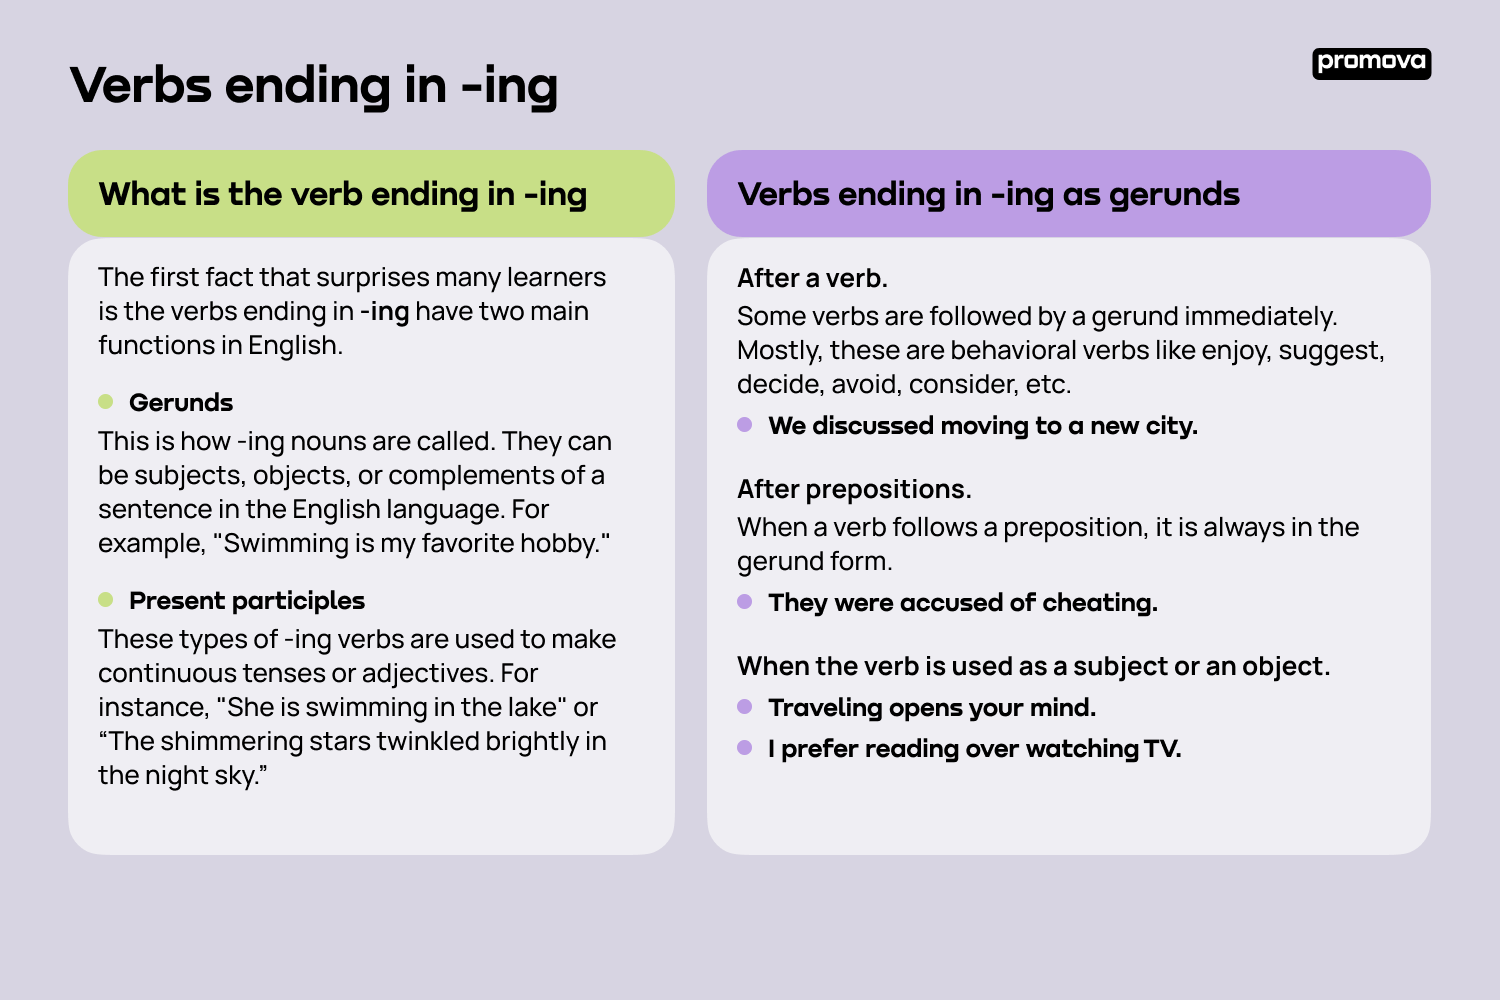 Exploring Verbs Ending in '-ing'